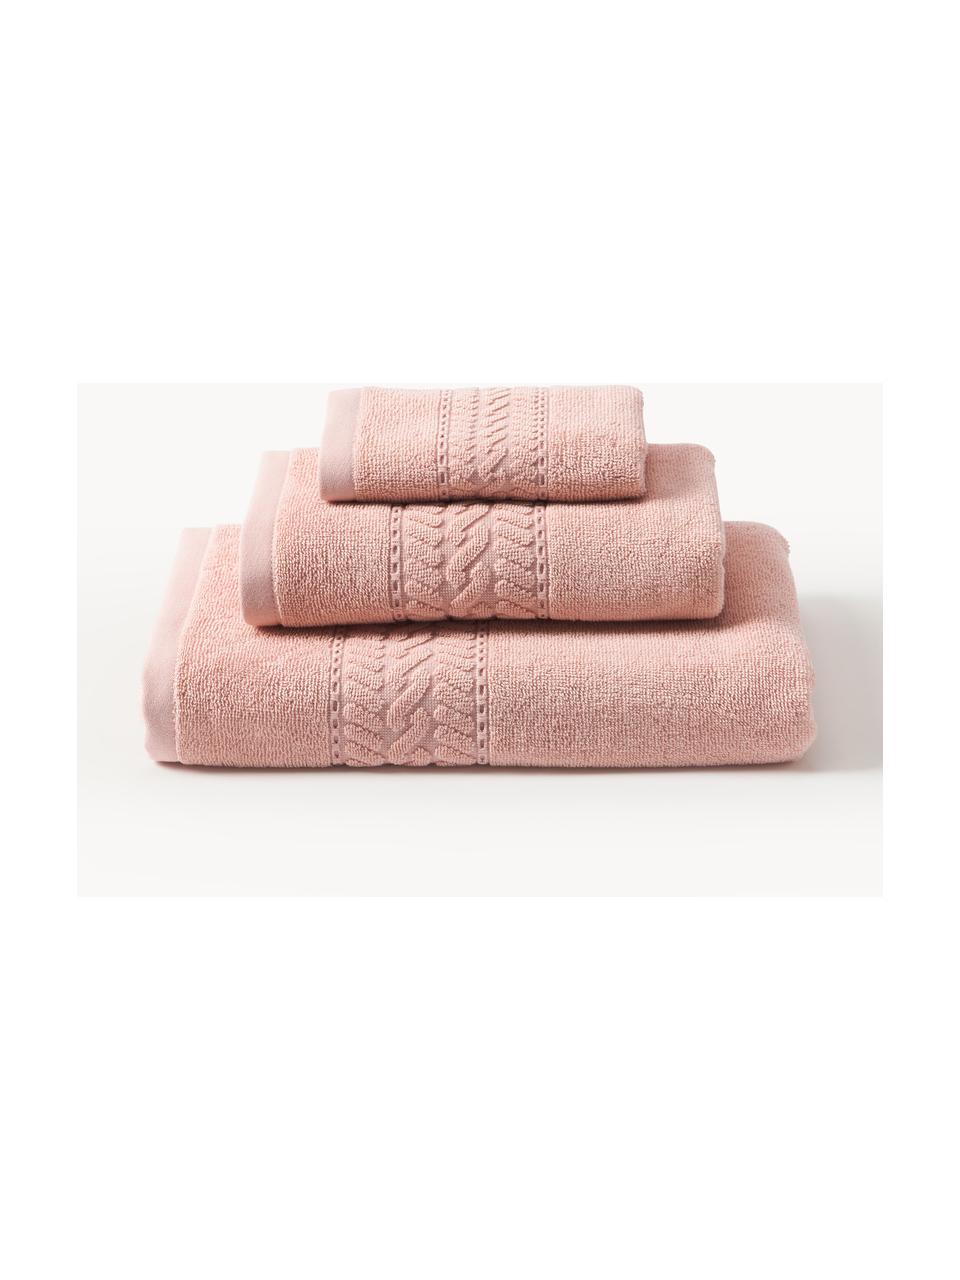 Sada ručníků Cordelia, 3 díly, Broskvová, 3dílná sada (ručník pro hosty, ručník a osuška)